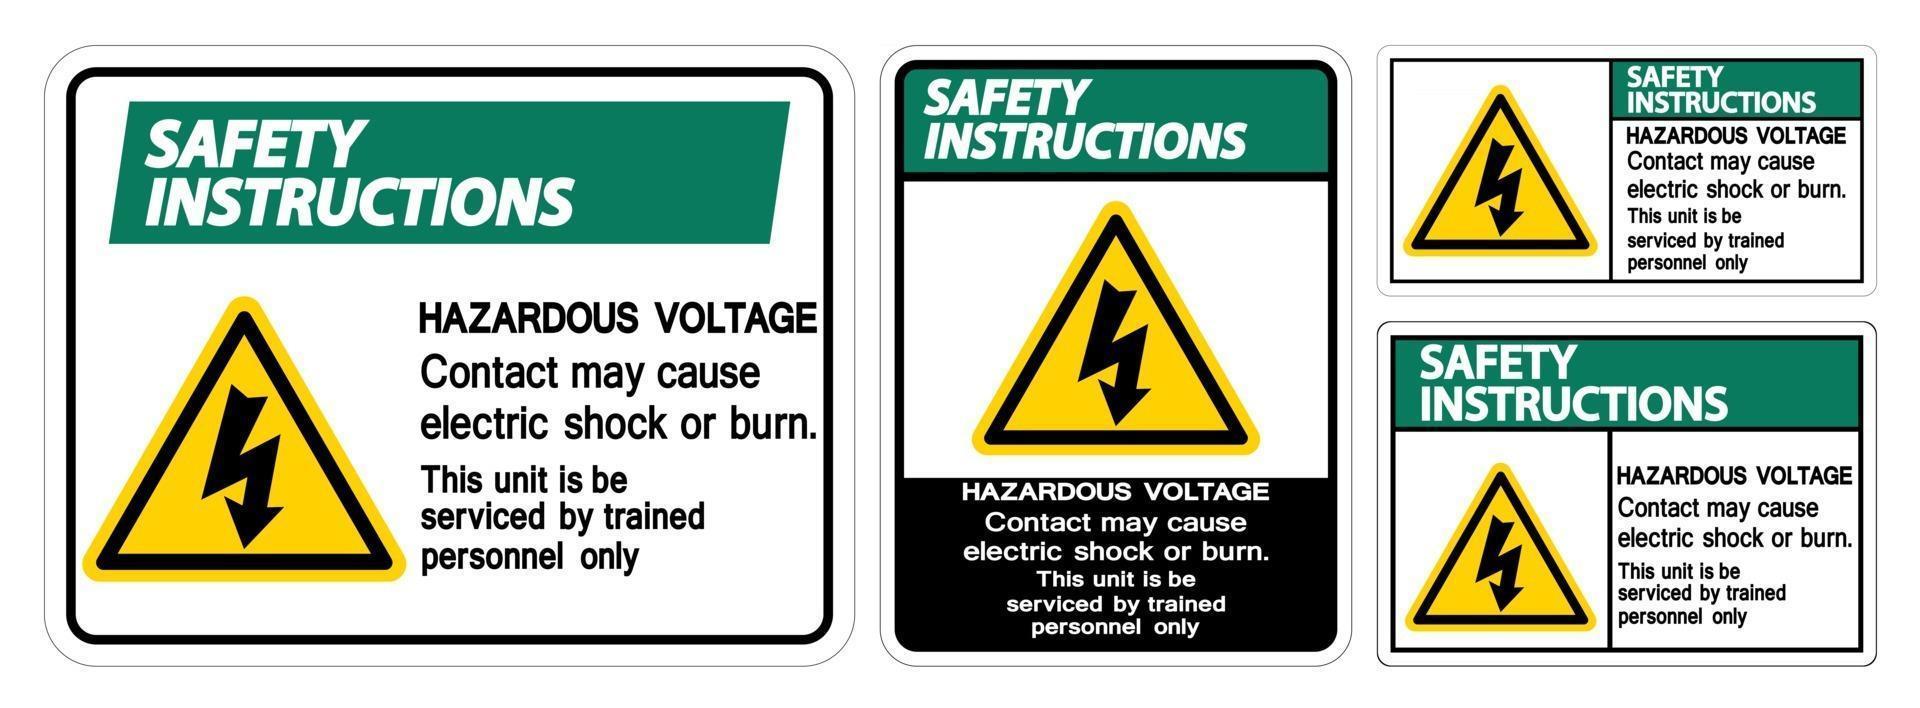 kontakt med farlig spänning kan orsaka elektrisk stöt eller brännskada vektor